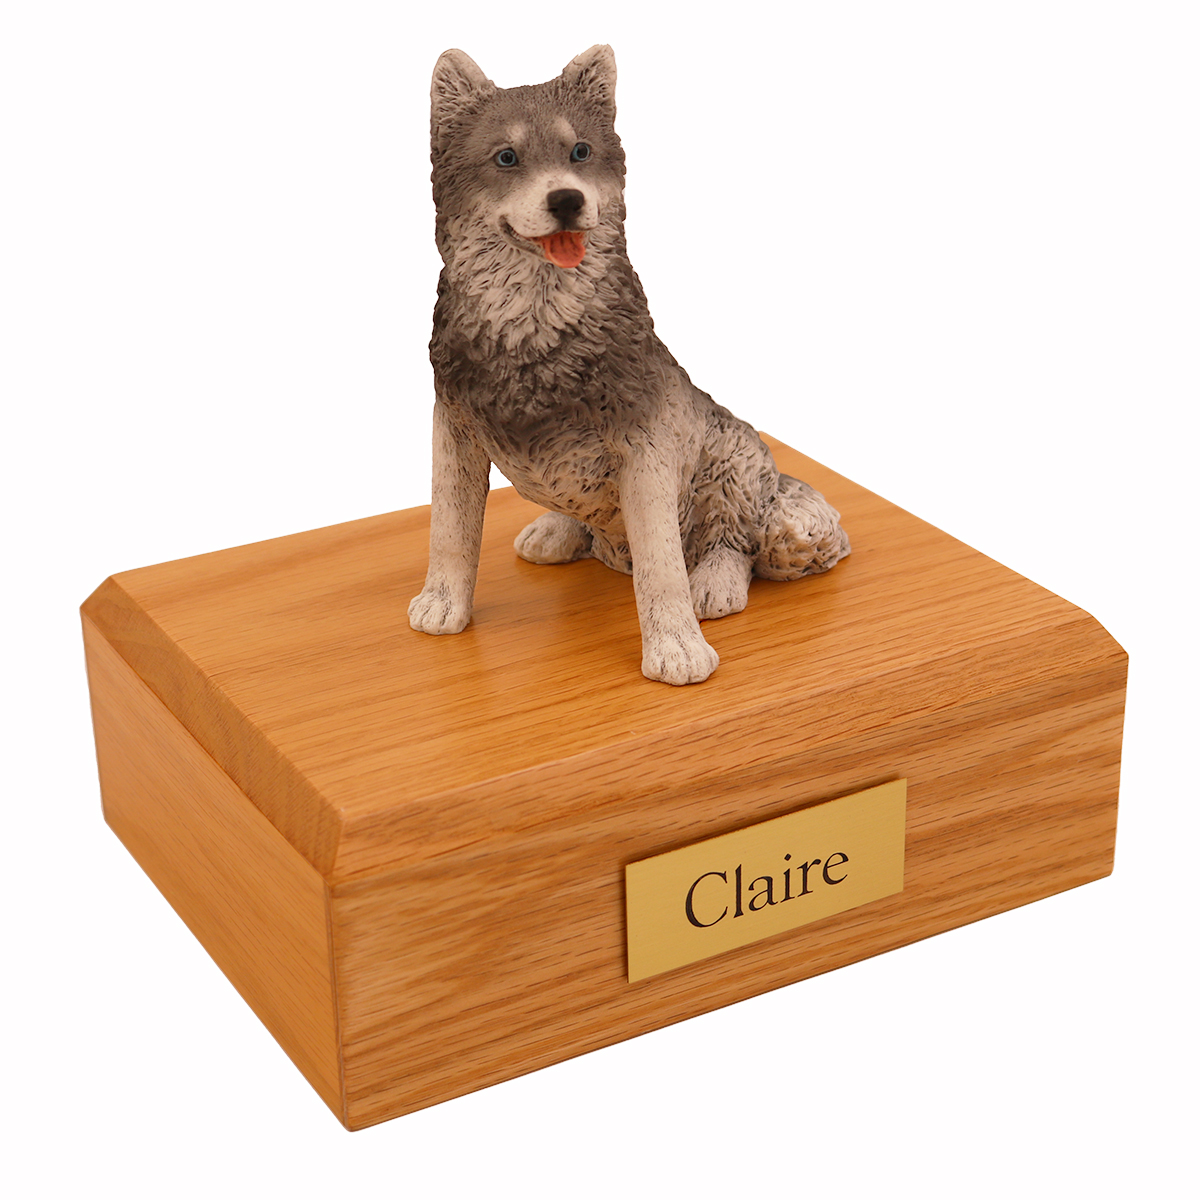 Dog, Husky - Figurine Urn